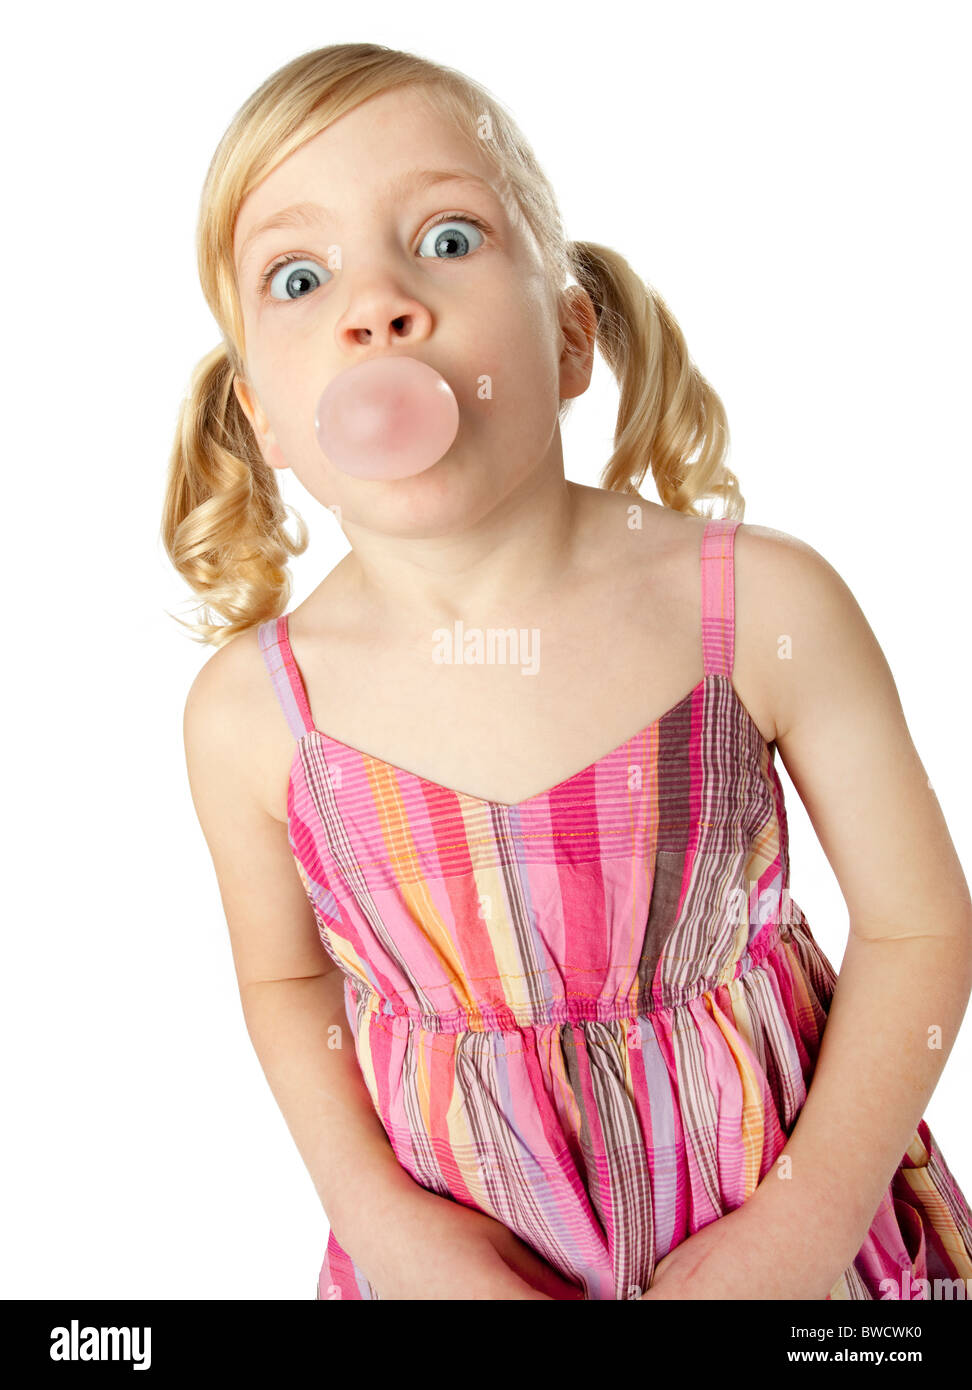 Süße weibliches Kind Seifenblase mit Kaugummi, mit weit aufgerissenen Augen, humorvolle Gesichtsausdruck, geschossen auf weißem Hintergrund. Stockfoto